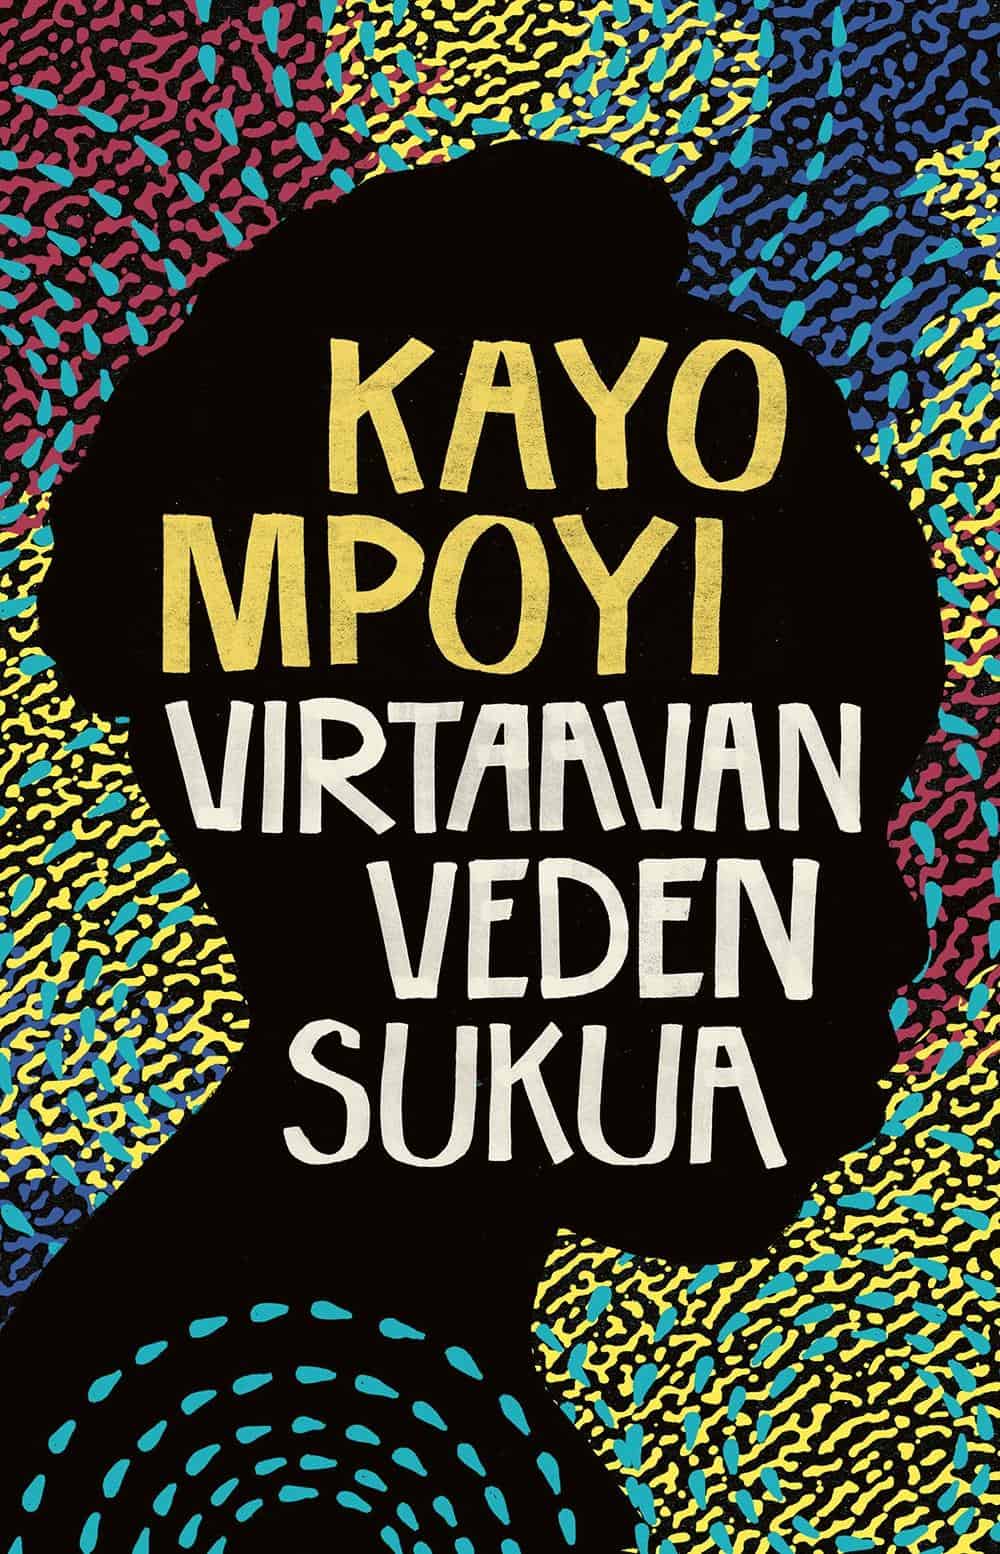 Kayo Mpoyi: Virtaavan veden sukua (Finnish language, 2020)